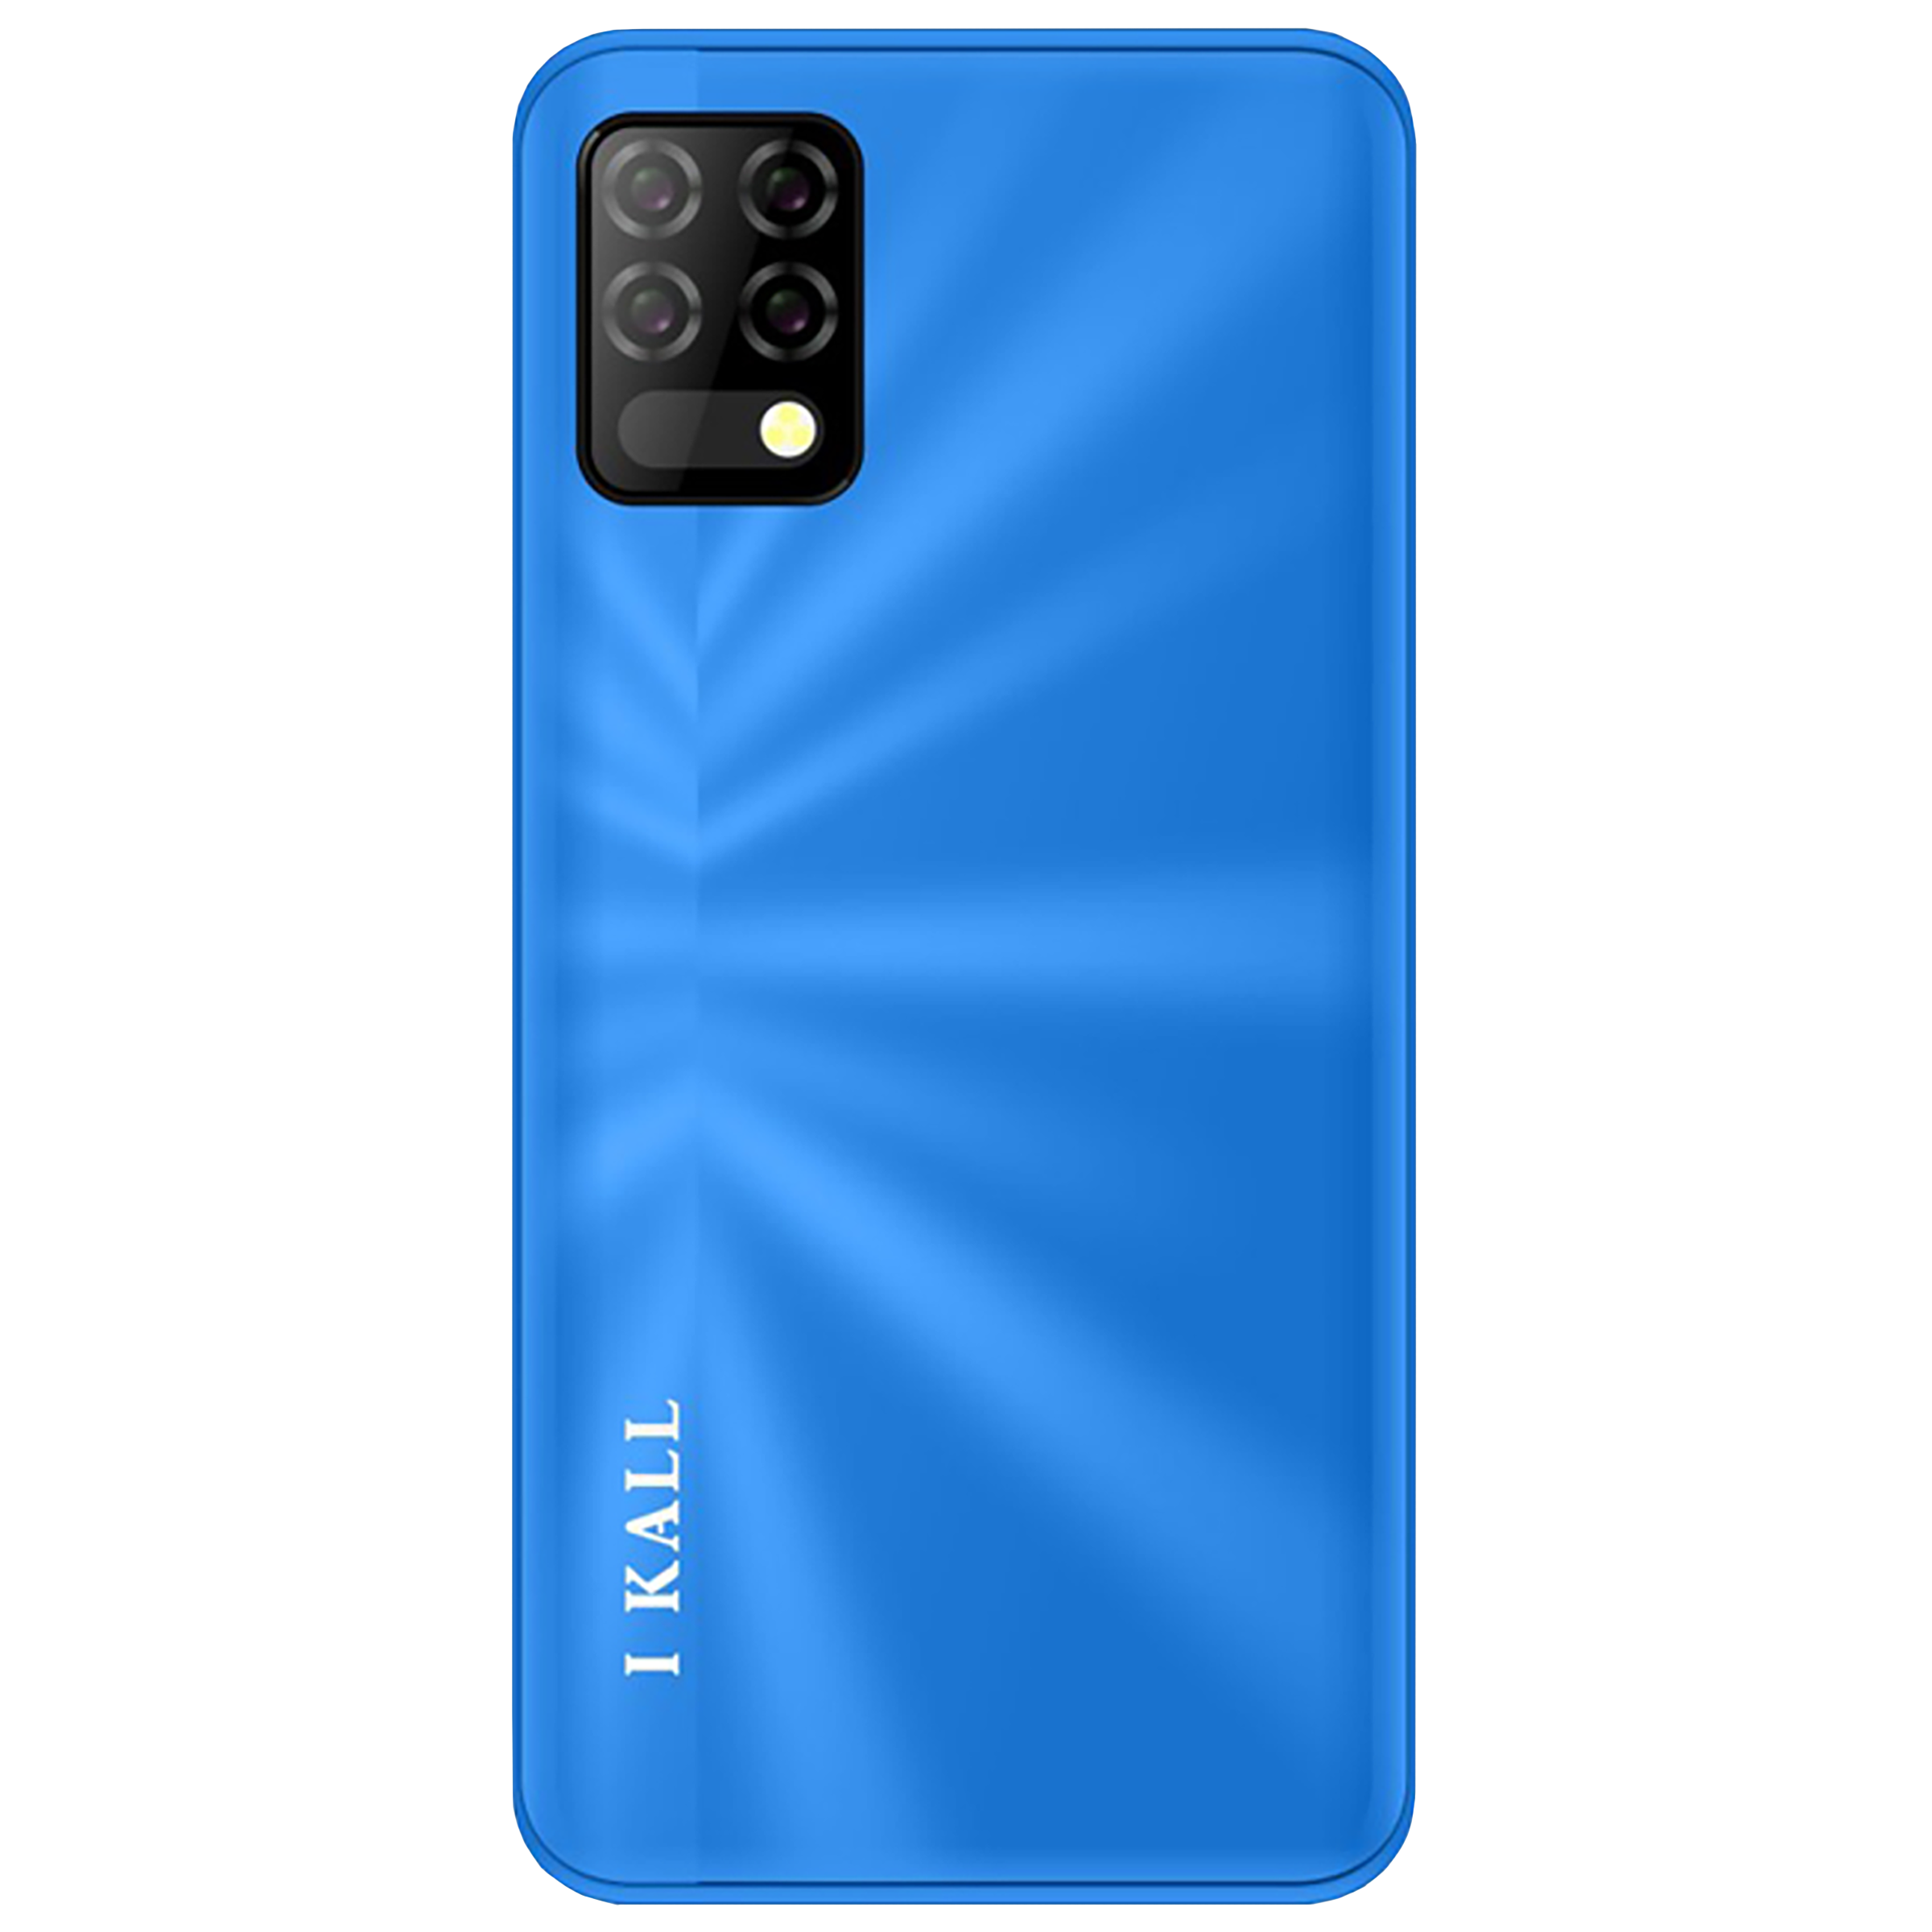 I KALL Z8 (3GB RAM, 16GB, Blue)_4